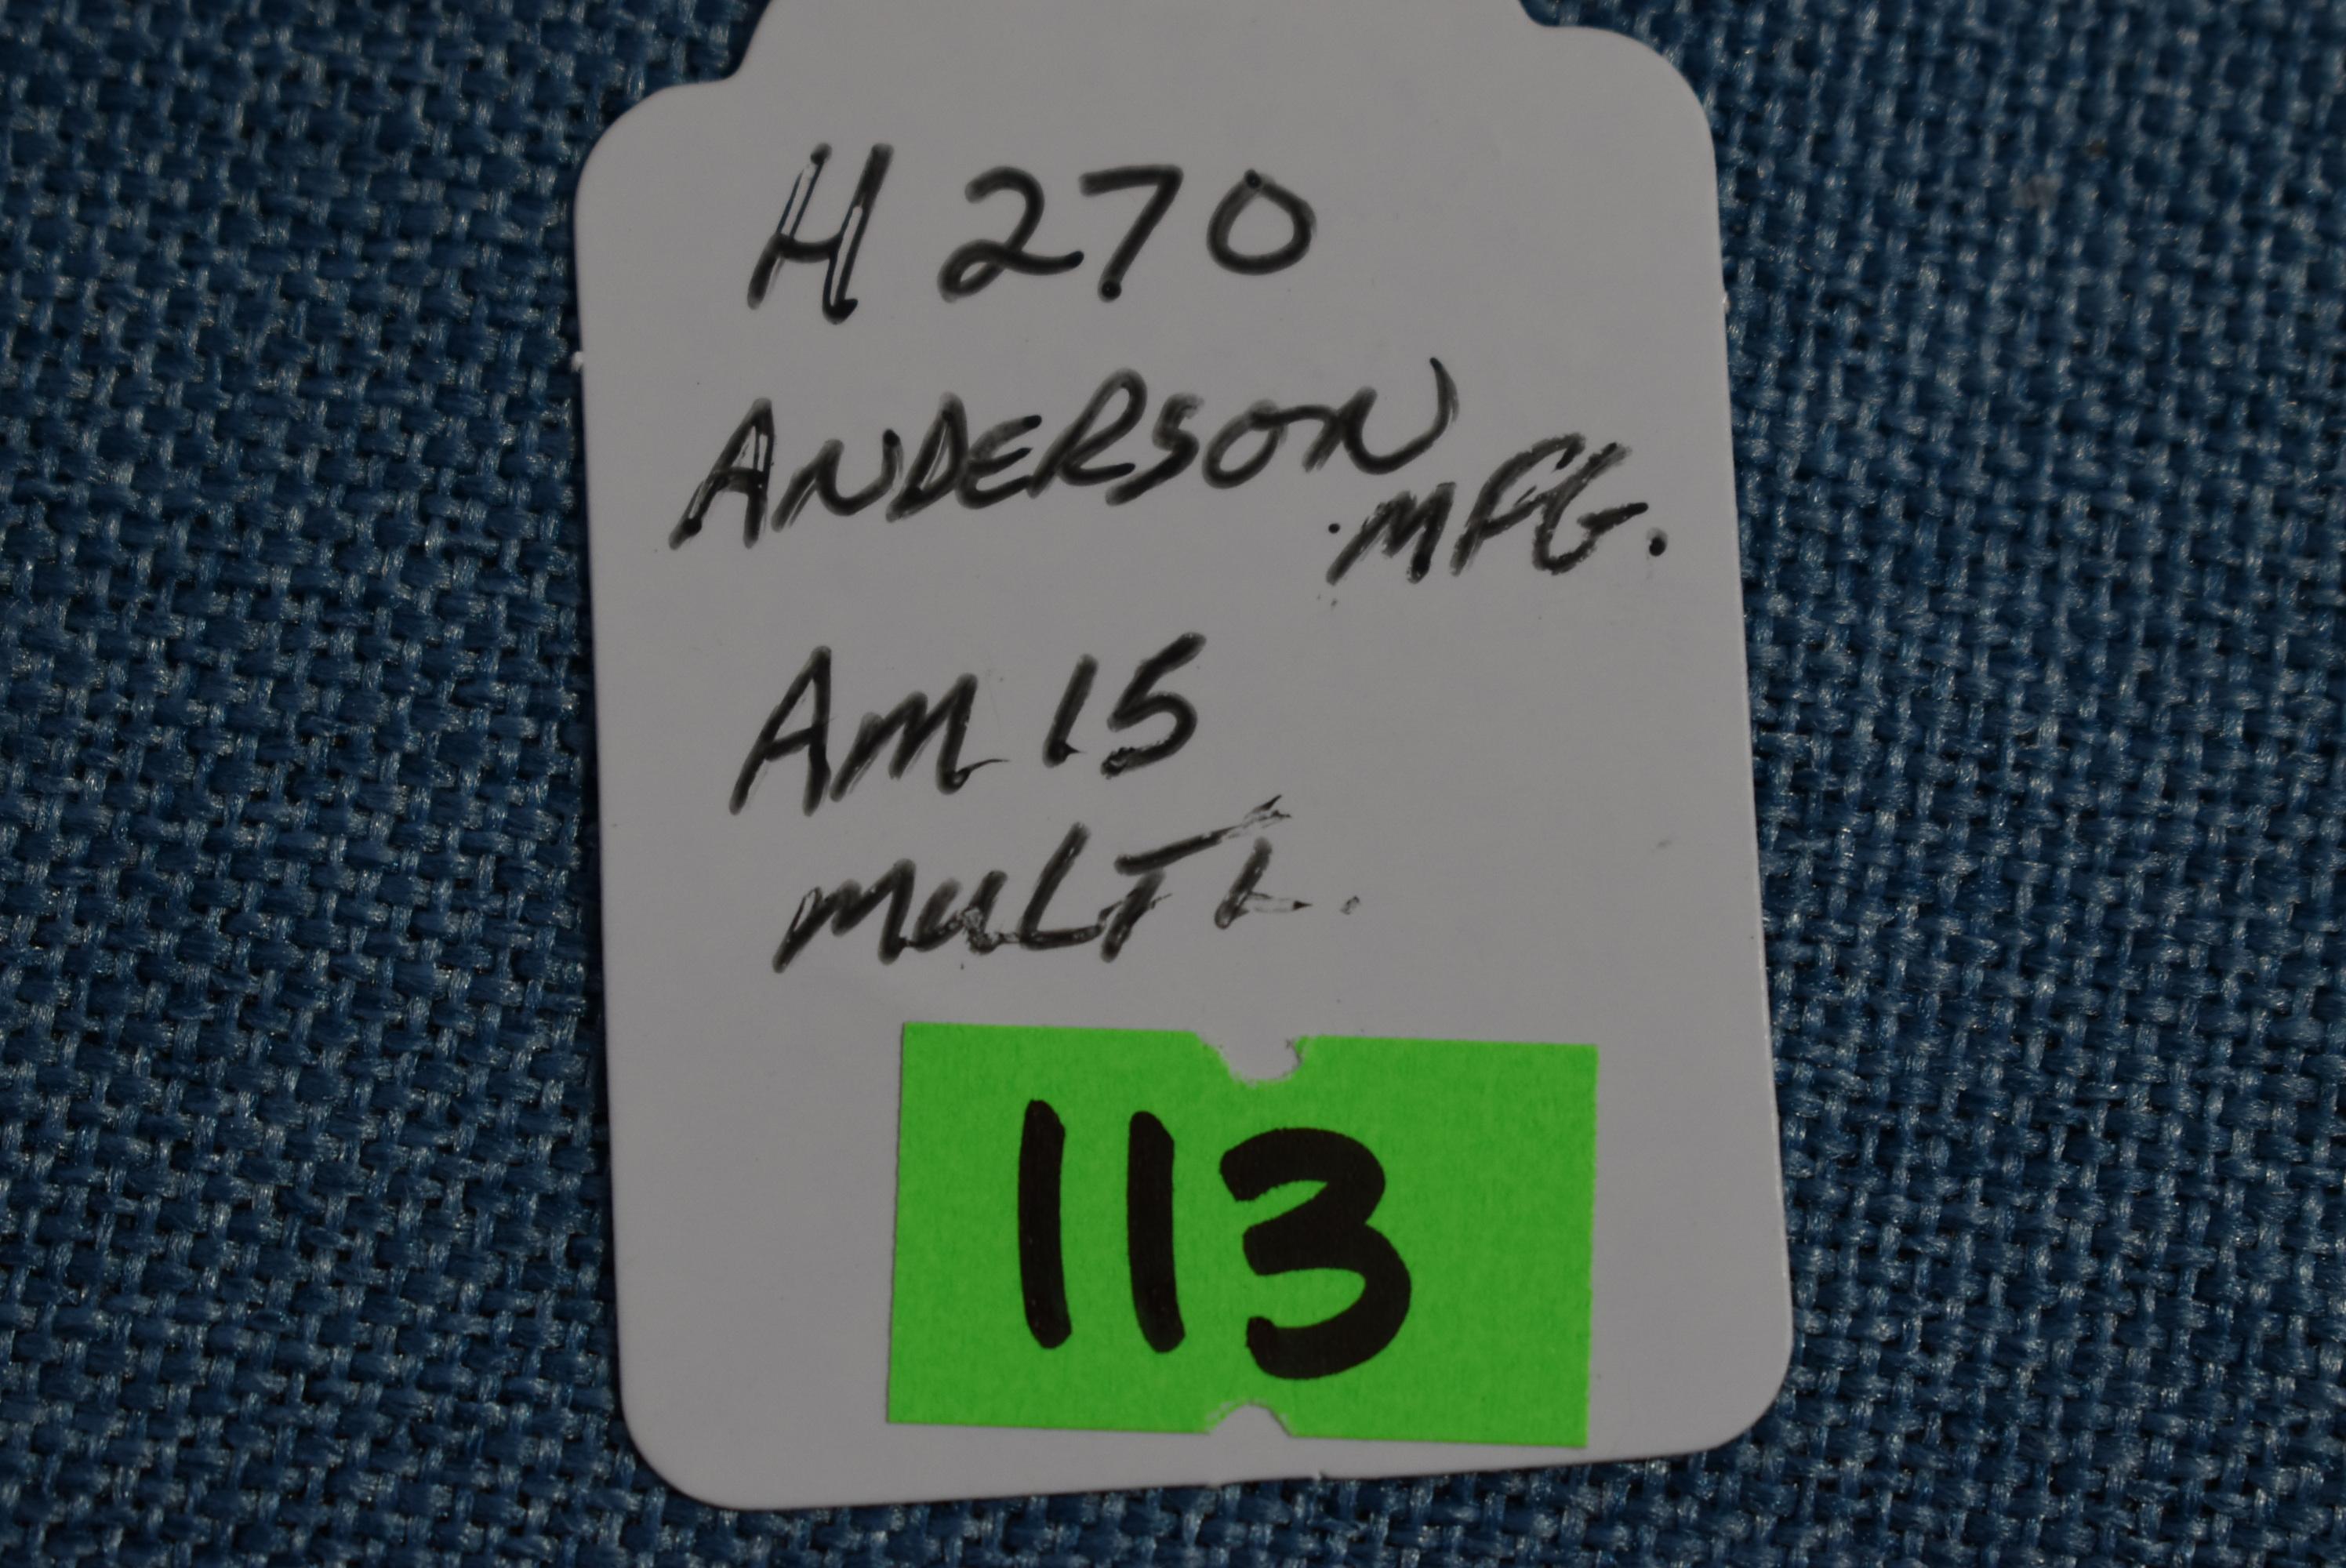 FIREARM/GUN ANDERSON AM15 !! H270